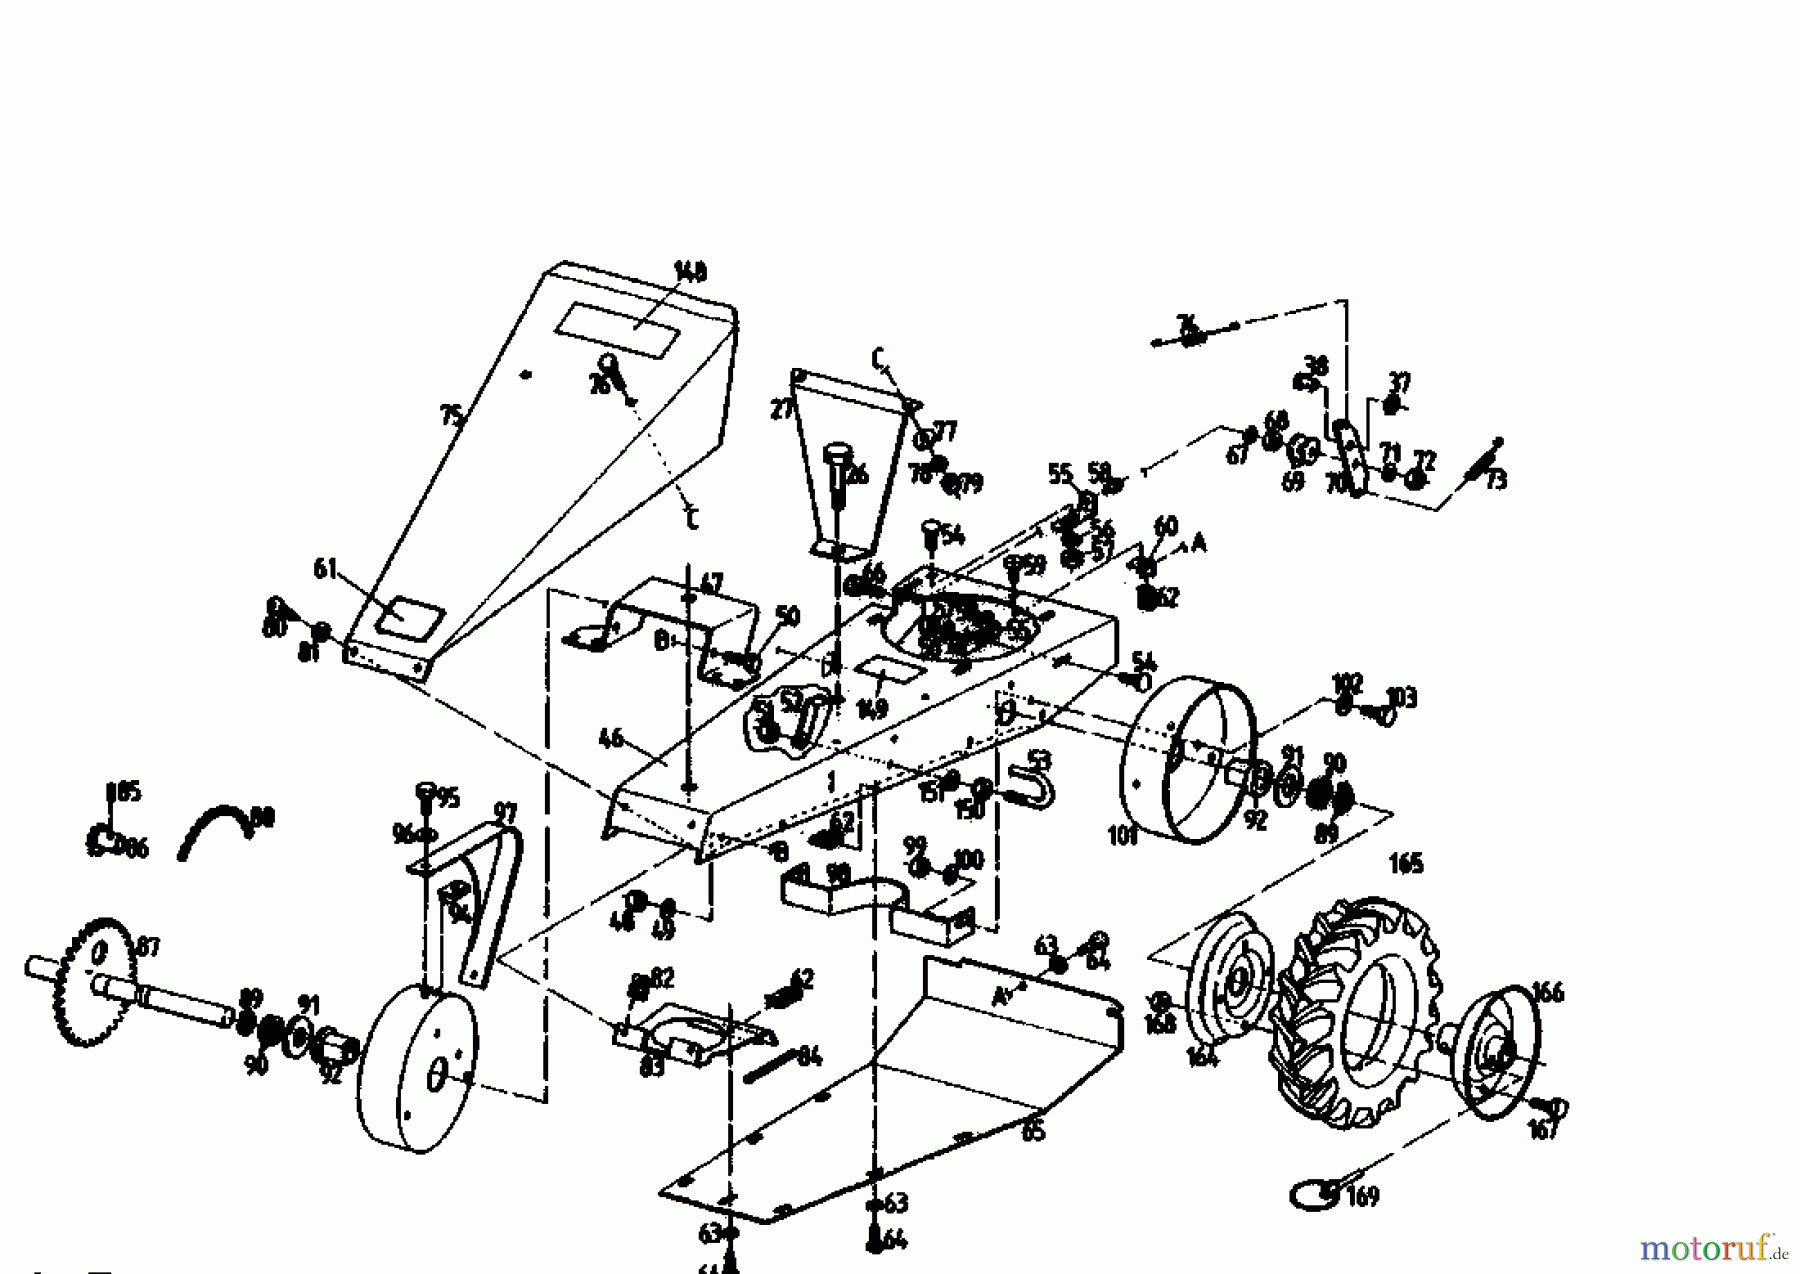  Golf Cutter bar mower 270 BMR 4 07510.02  (1989) Gearbox, Wheels